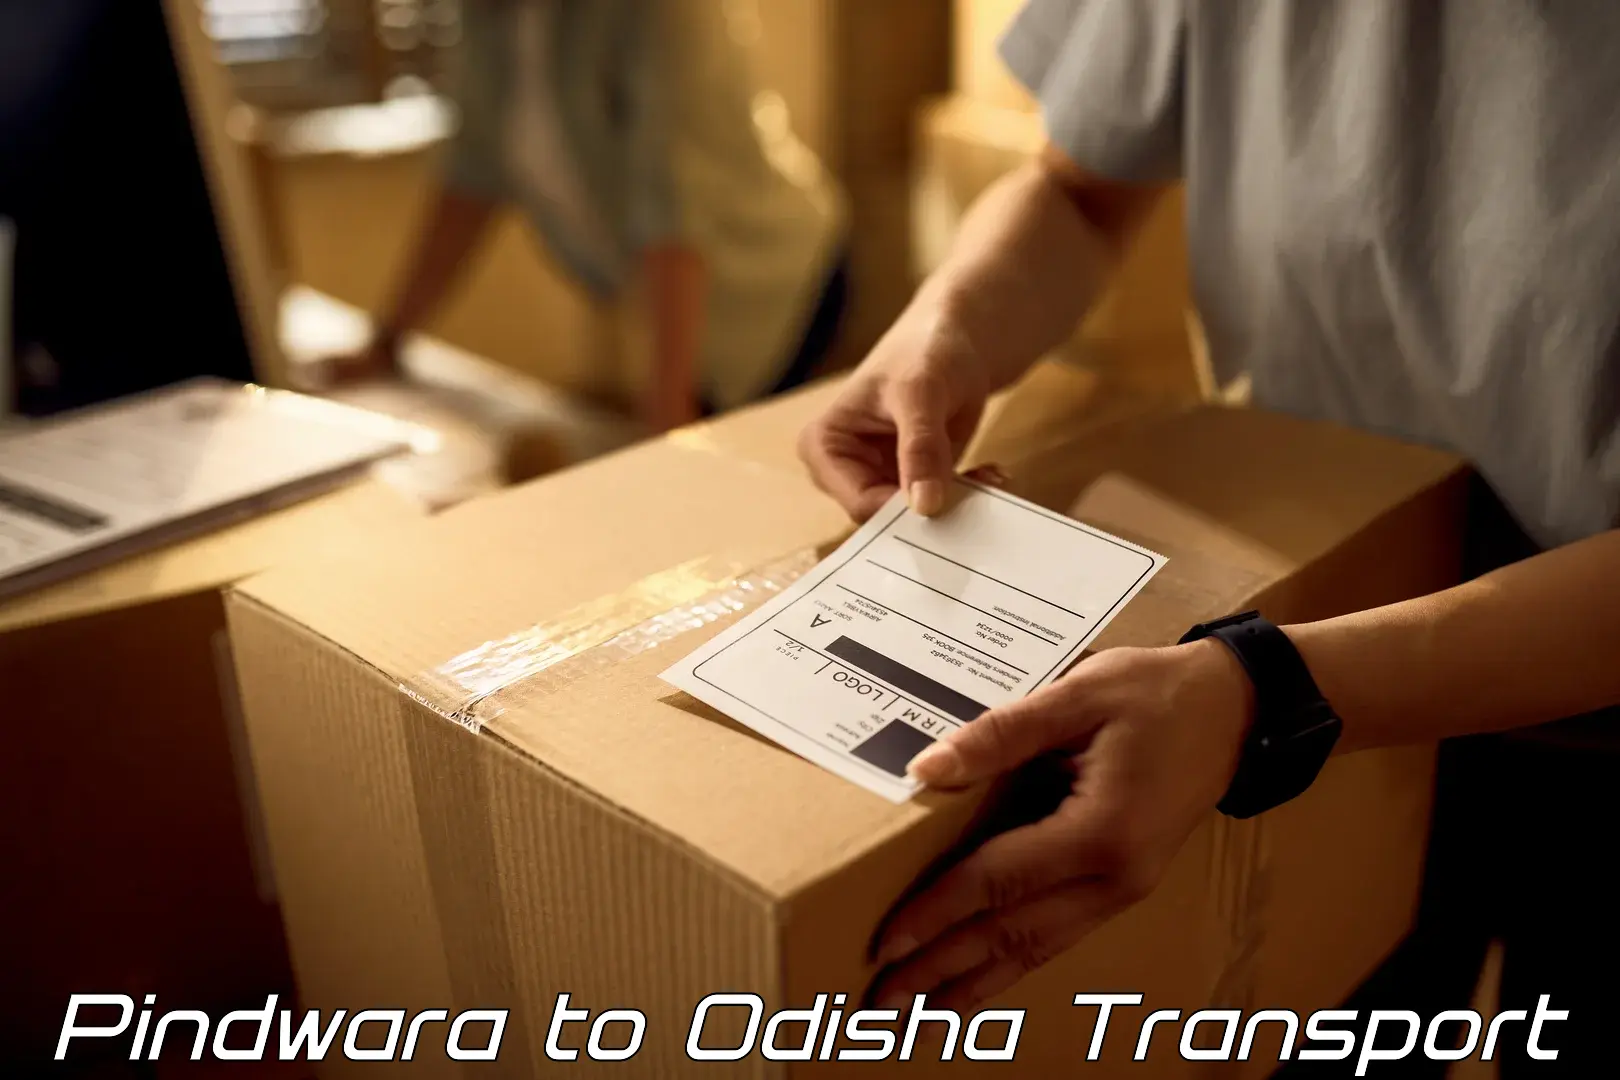 Furniture transport service Pindwara to Jaipatna